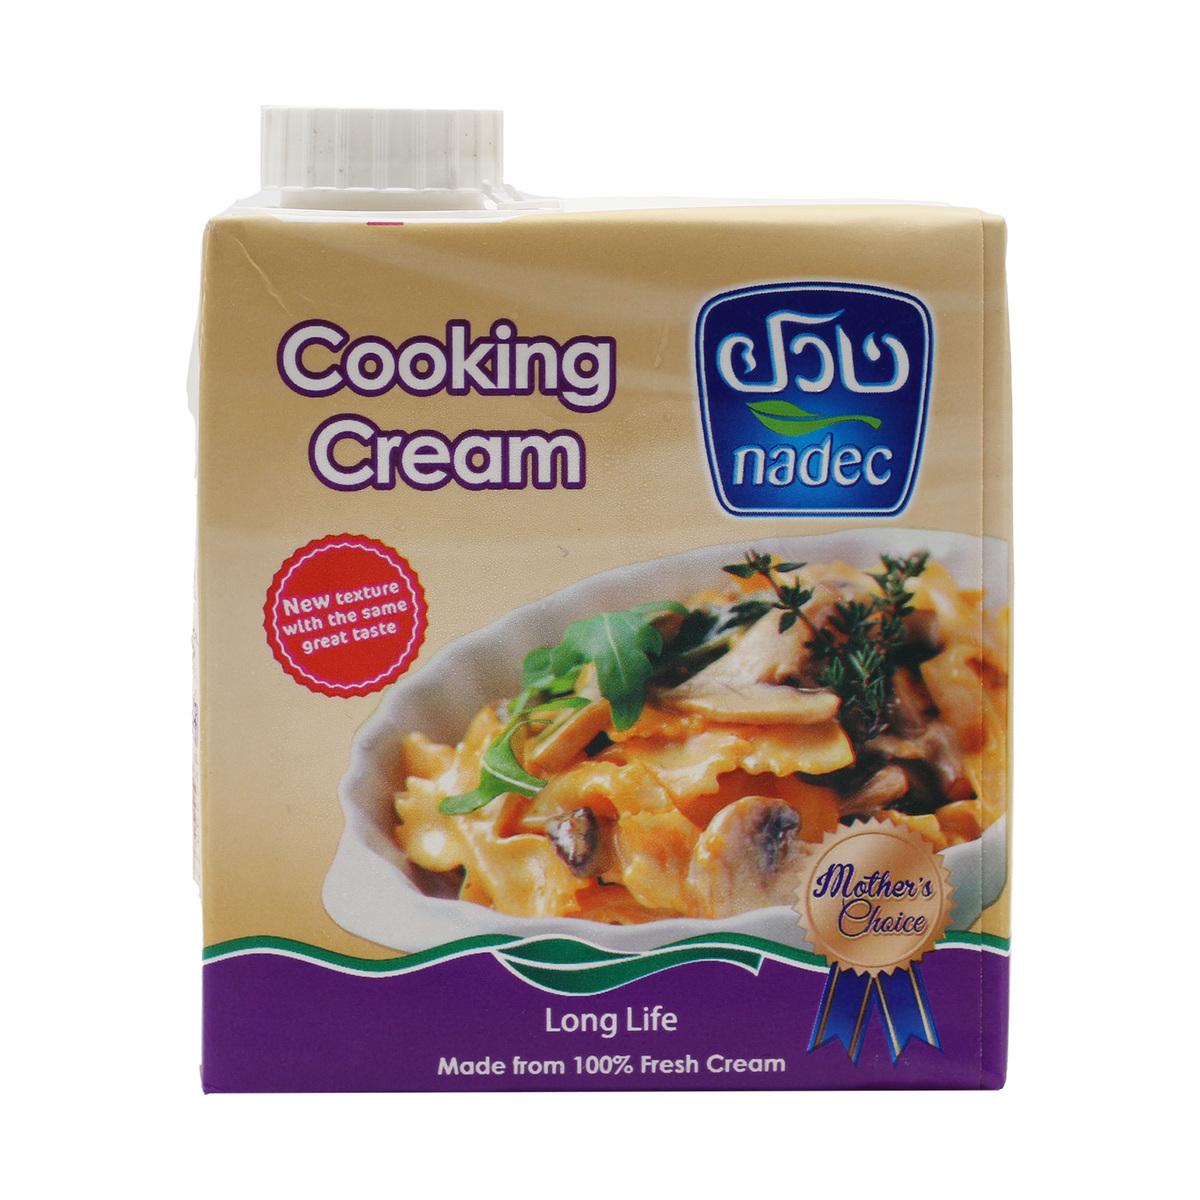 اشتري قم بشراء نادك كريمة طبخ طويلة الأمد 500 مل Online at Best Price من الموقع - من لولو هايبر ماركت Cooking Cream في السعودية